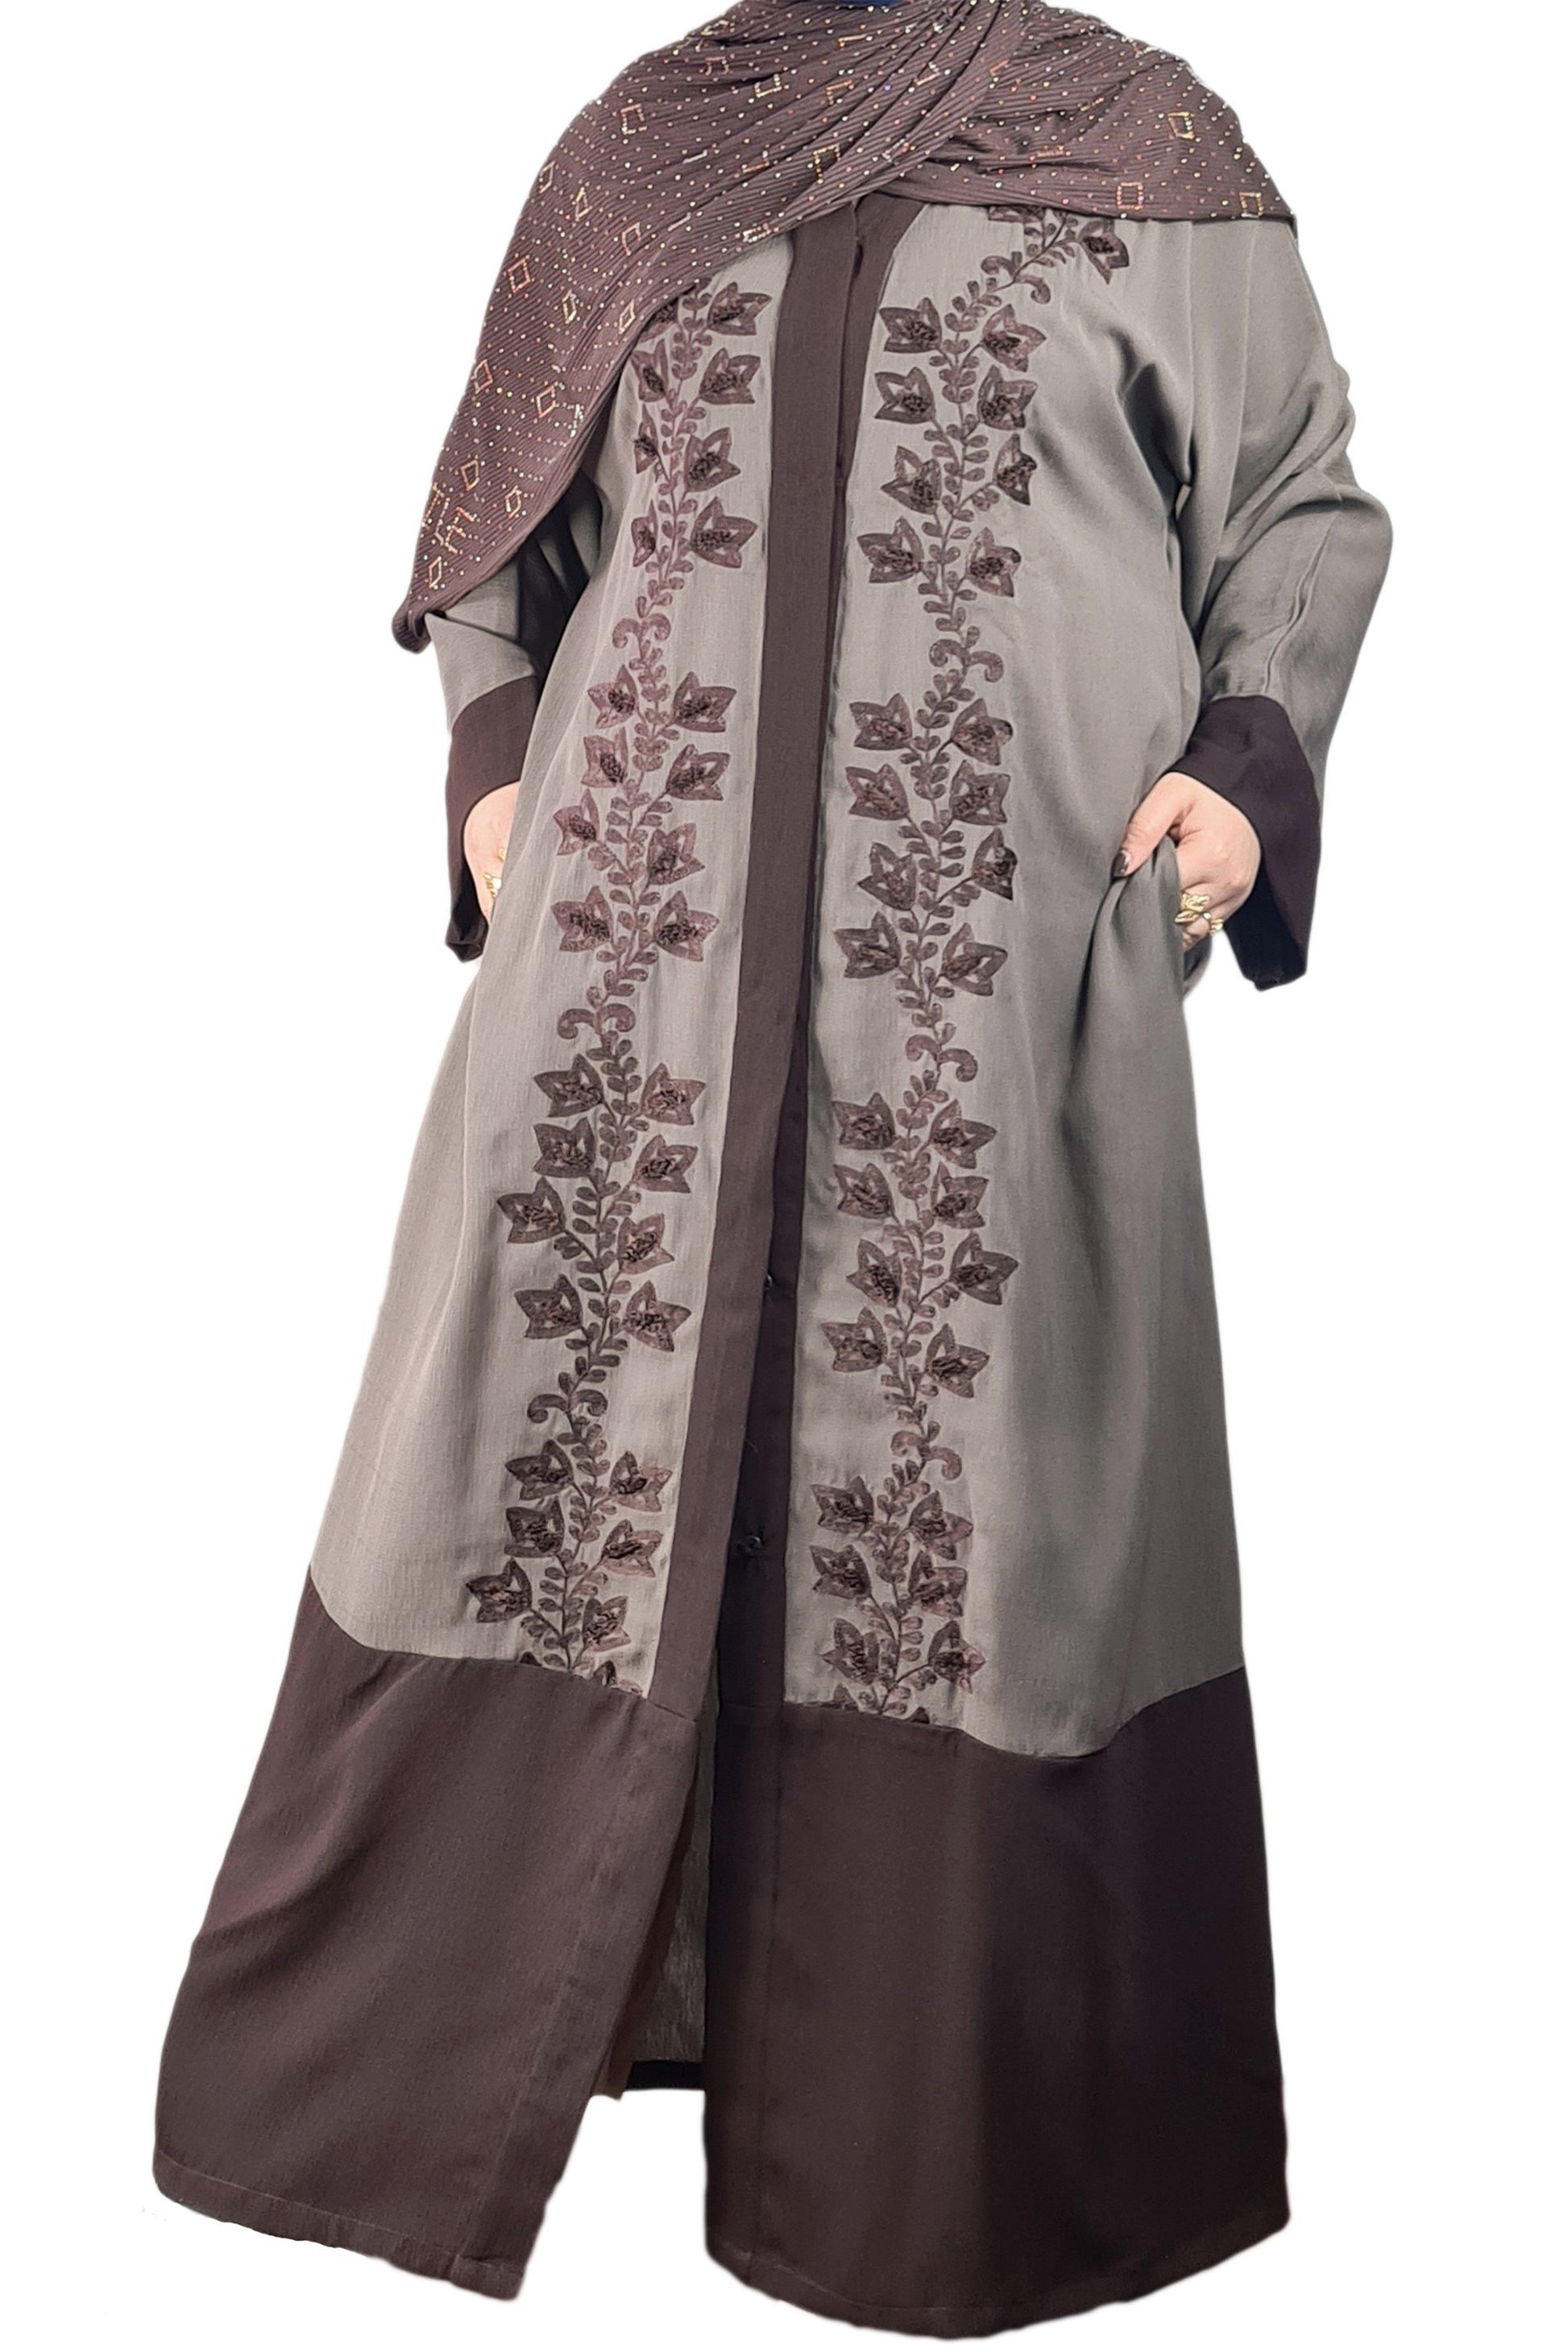 Brown & Dark Grey Exclusive Embroidered Open Abaya-almanaar Islamic Store